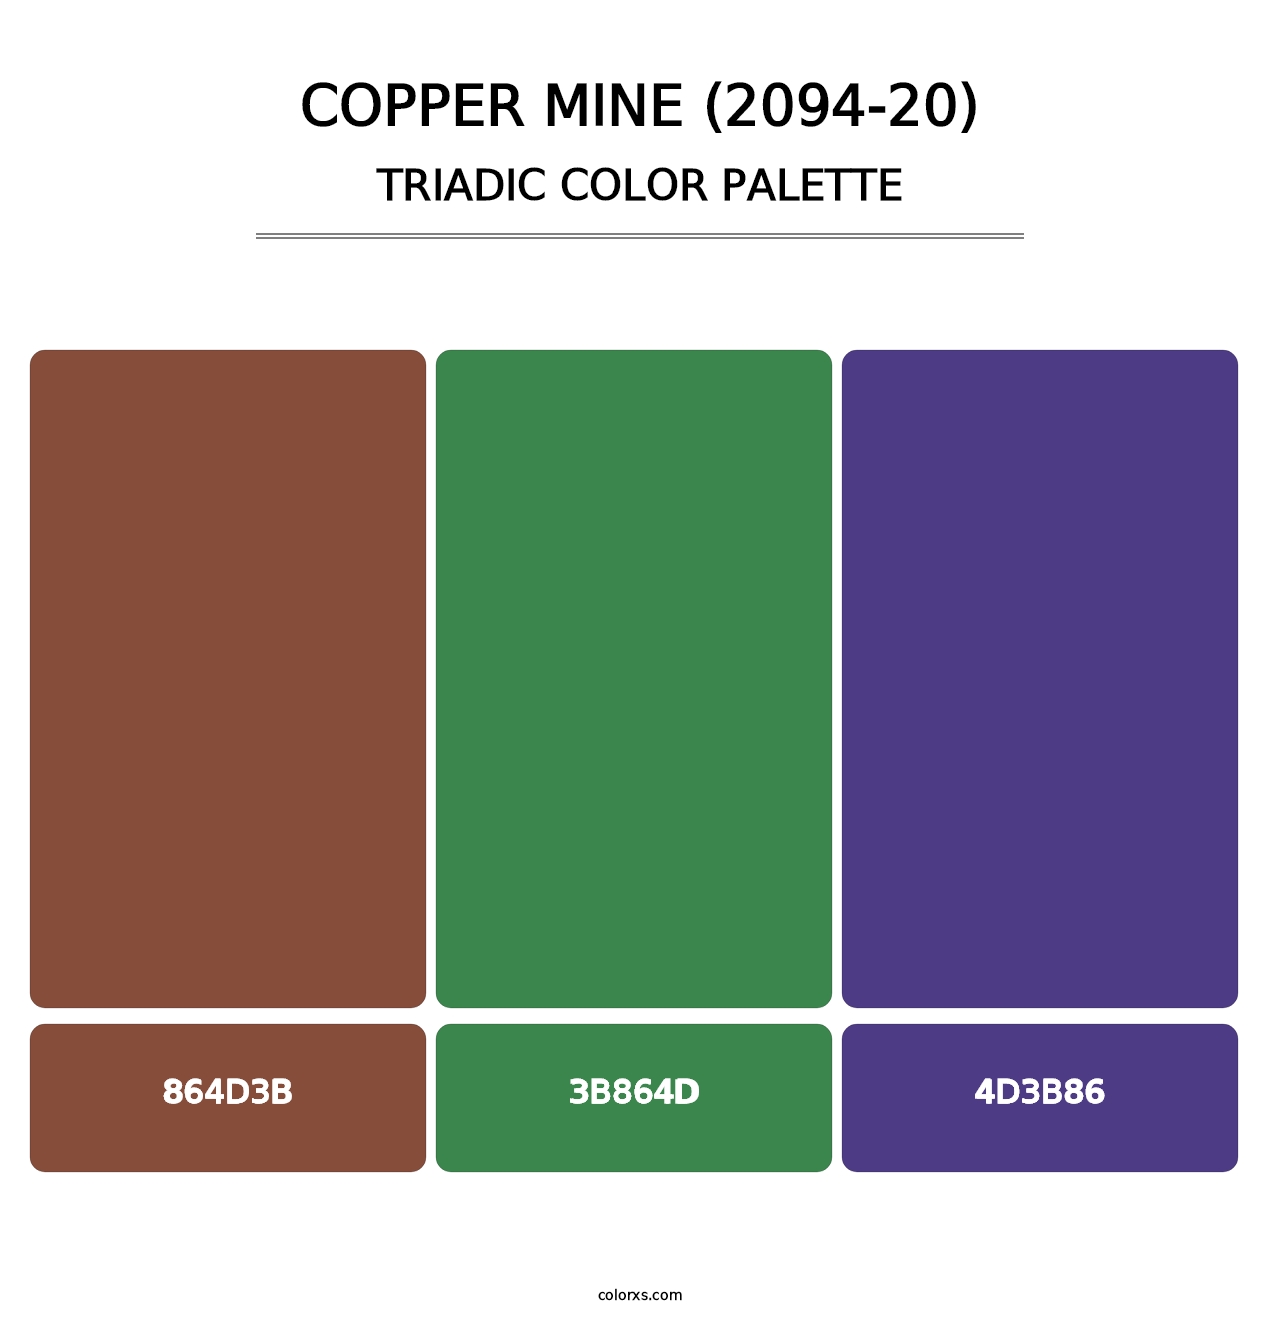 Copper Mine (2094-20) - Triadic Color Palette